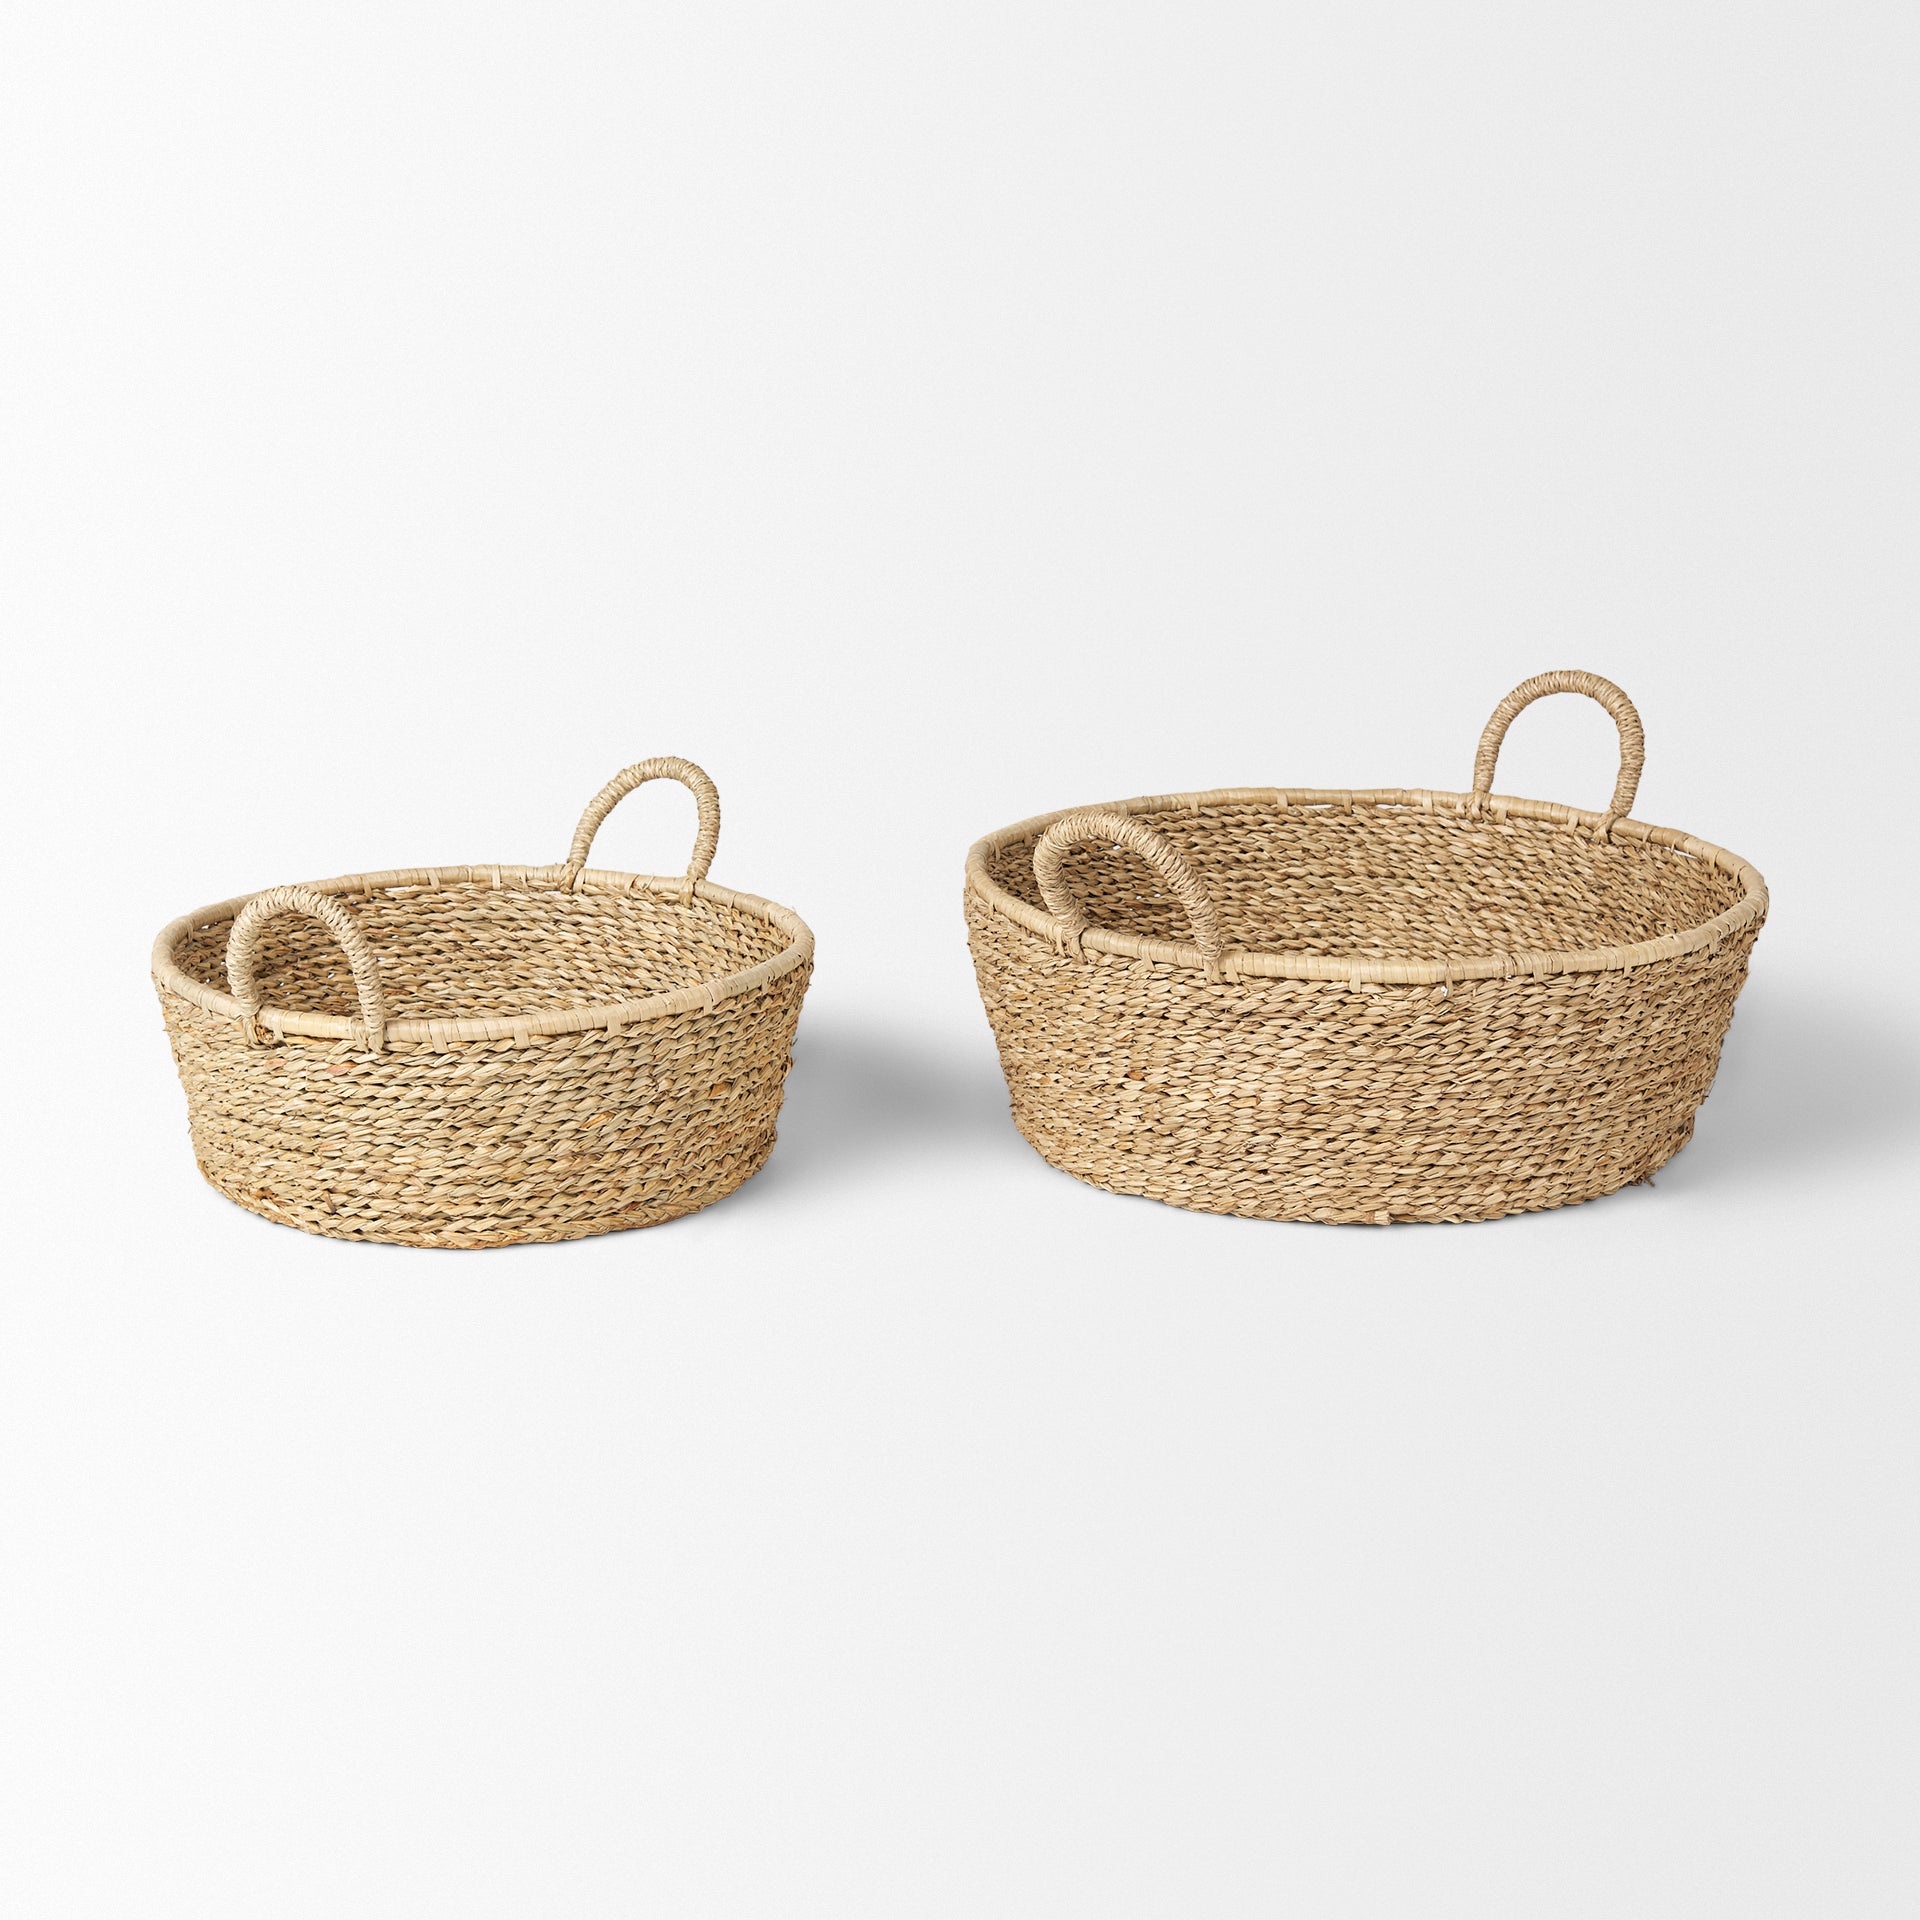 Ayanna Baskets - StyleMeGHD - Baskets + Bins